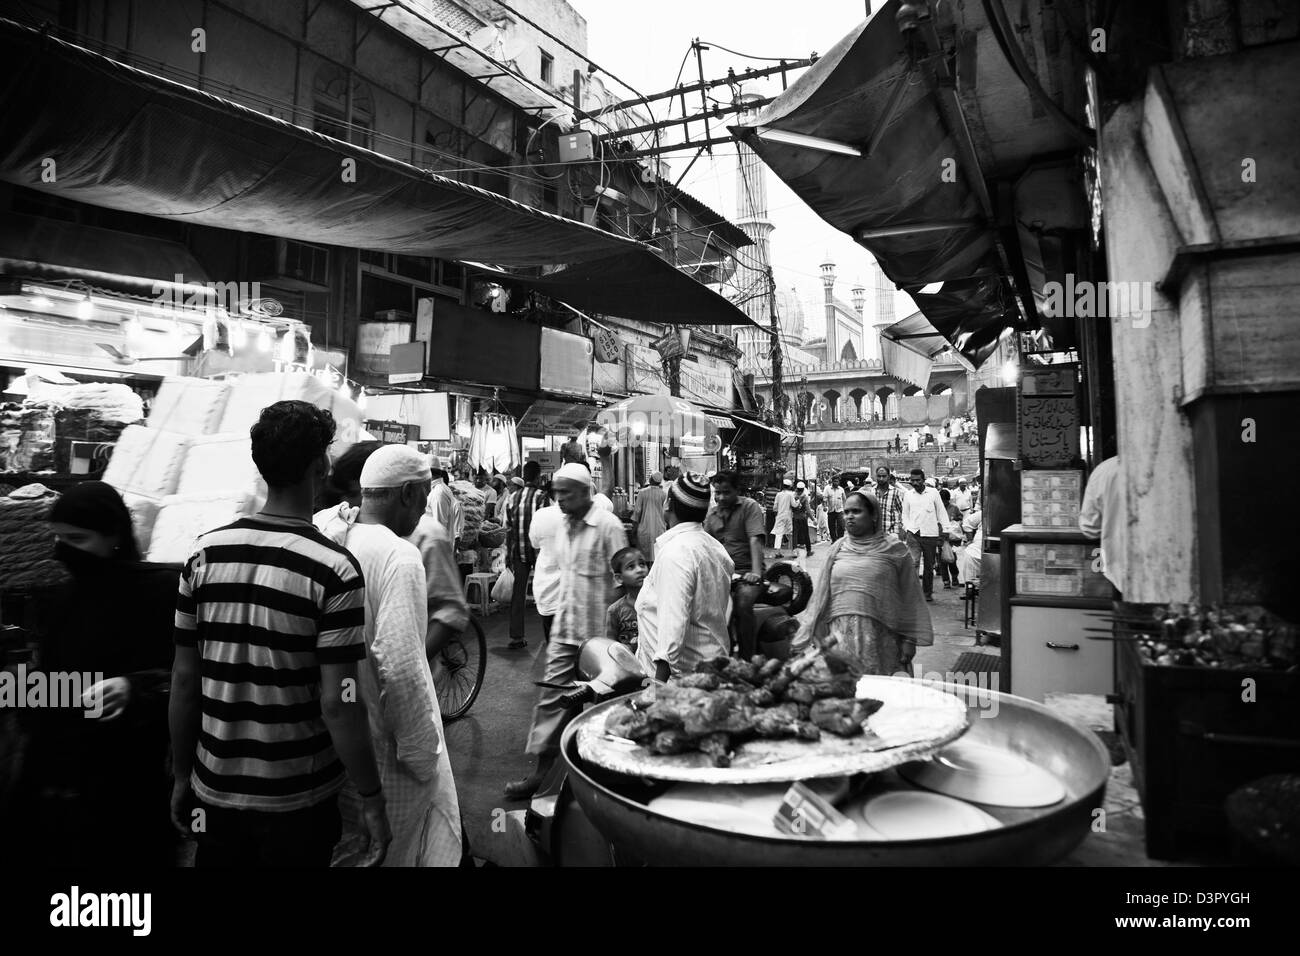 Strada del mercato con una moschea in background, Jama Masjid, la Vecchia Delhi, Delhi, India Foto Stock